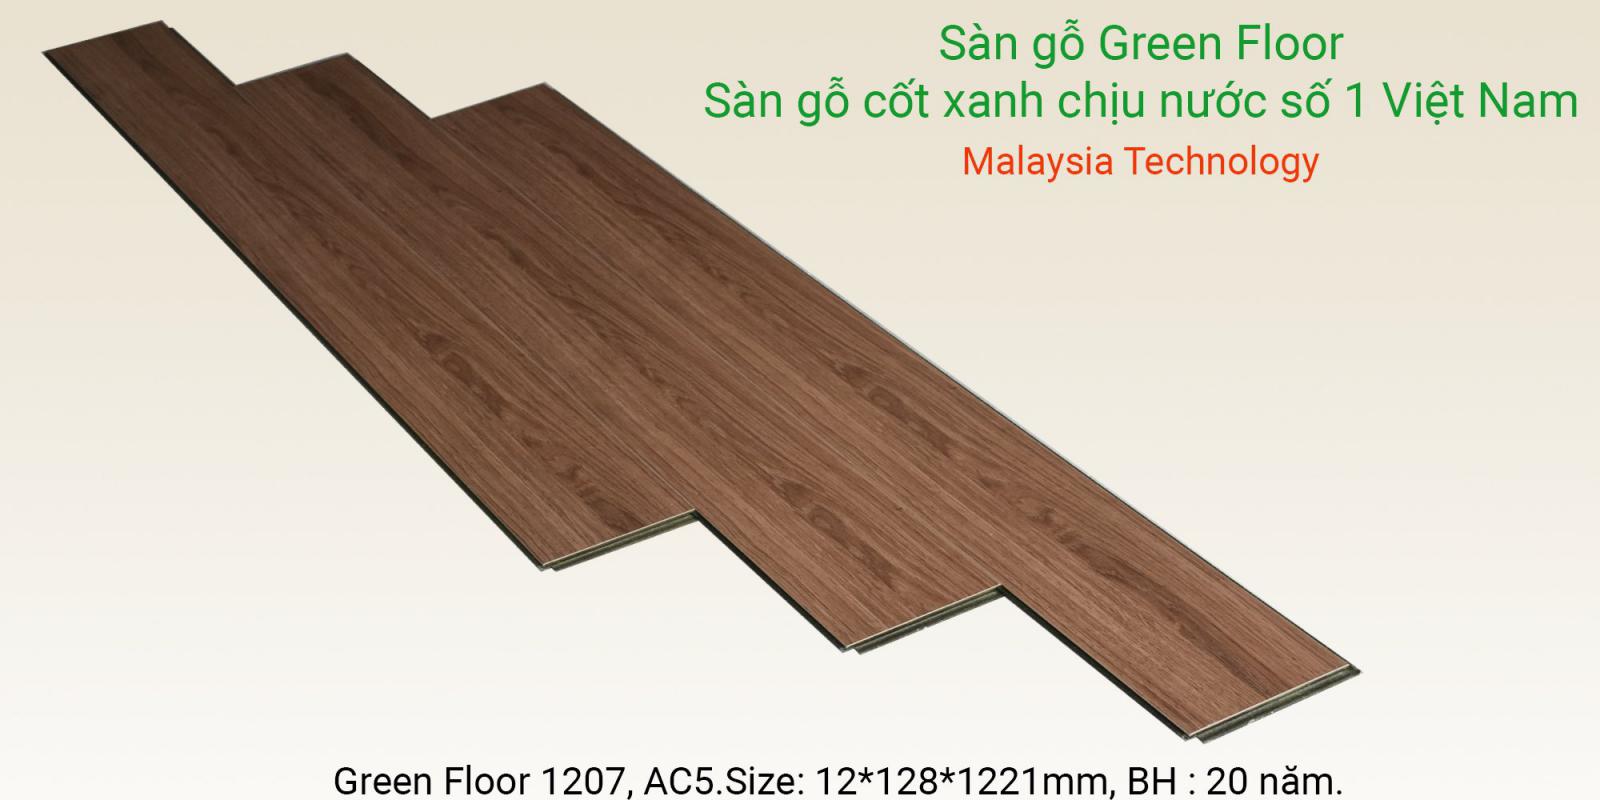 Sàn gỗ Greenfloor 1207